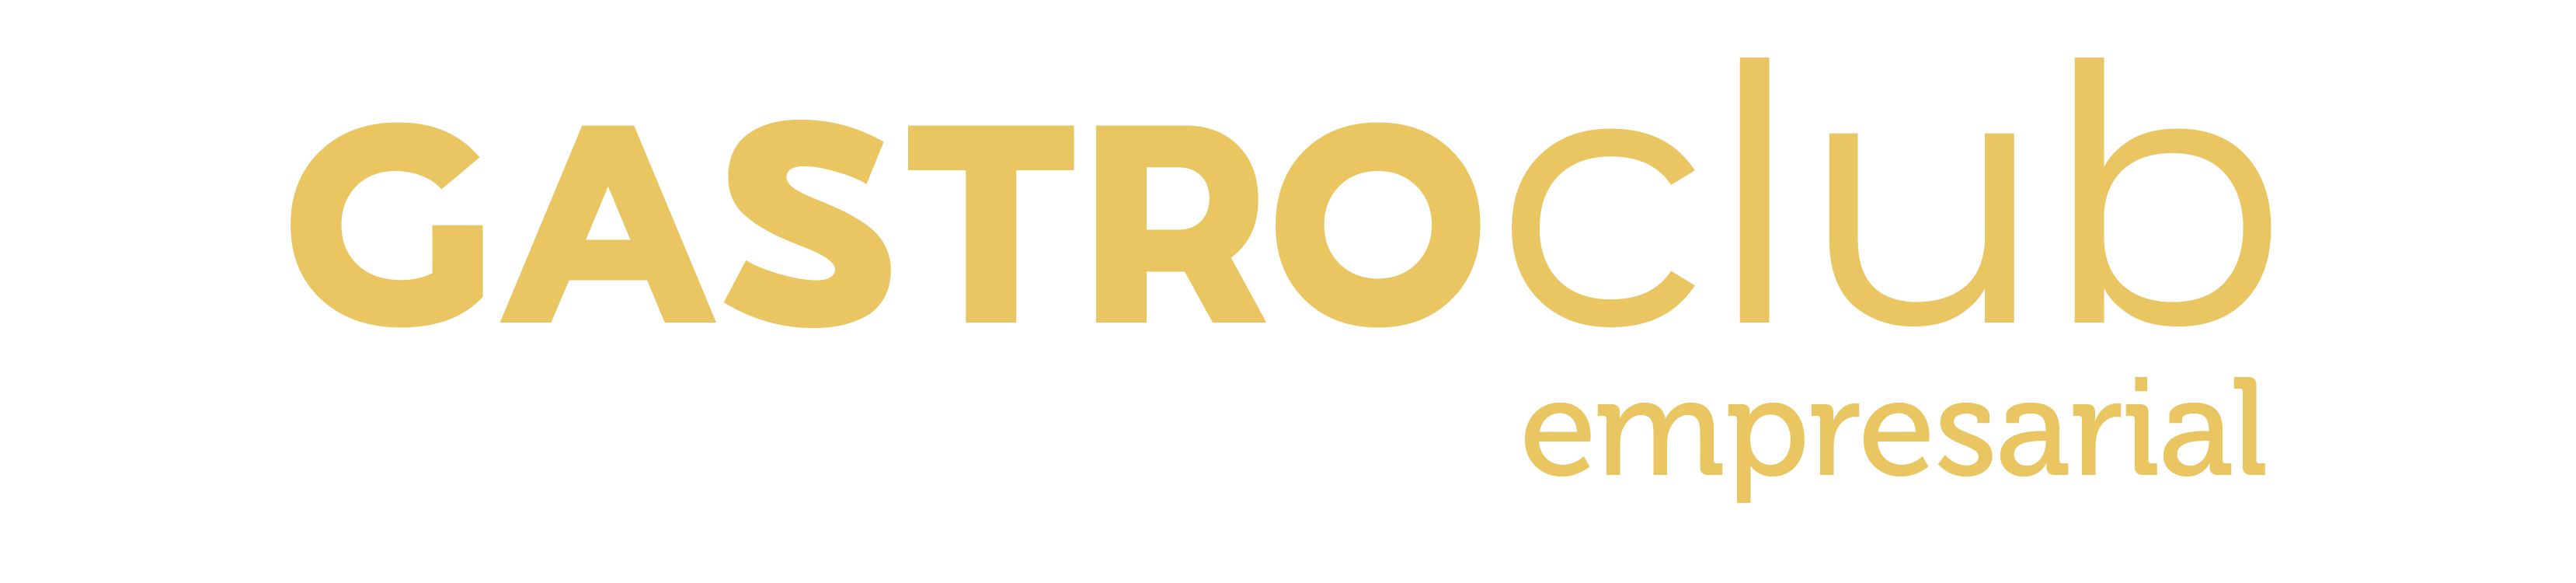 logotipo gastroclubempresarial